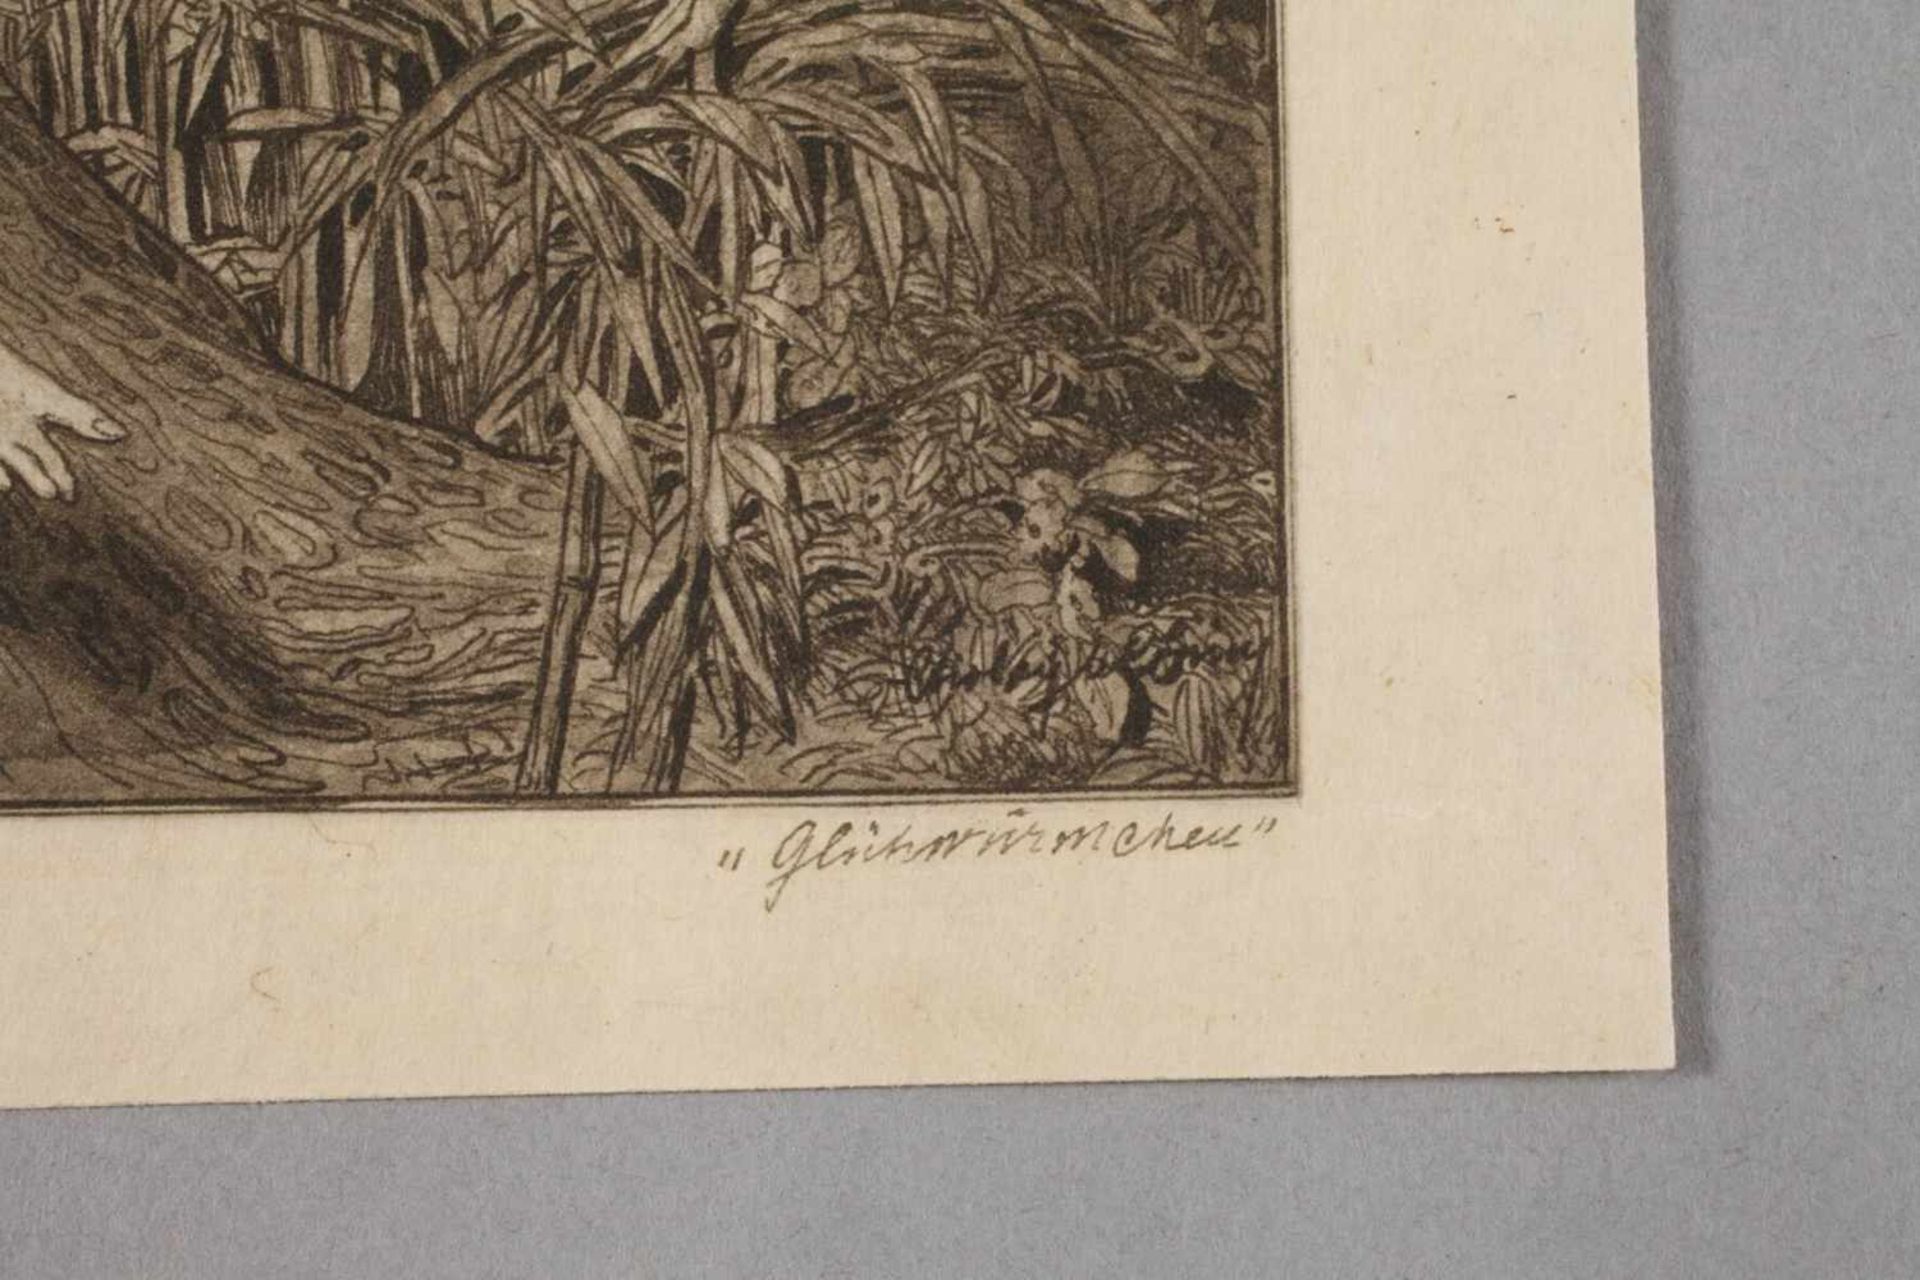 Franz von Bayros, "Glühwürmchen"phantasievolle, erotische Darstellung mit drei, teils nackten - Bild 3 aus 3